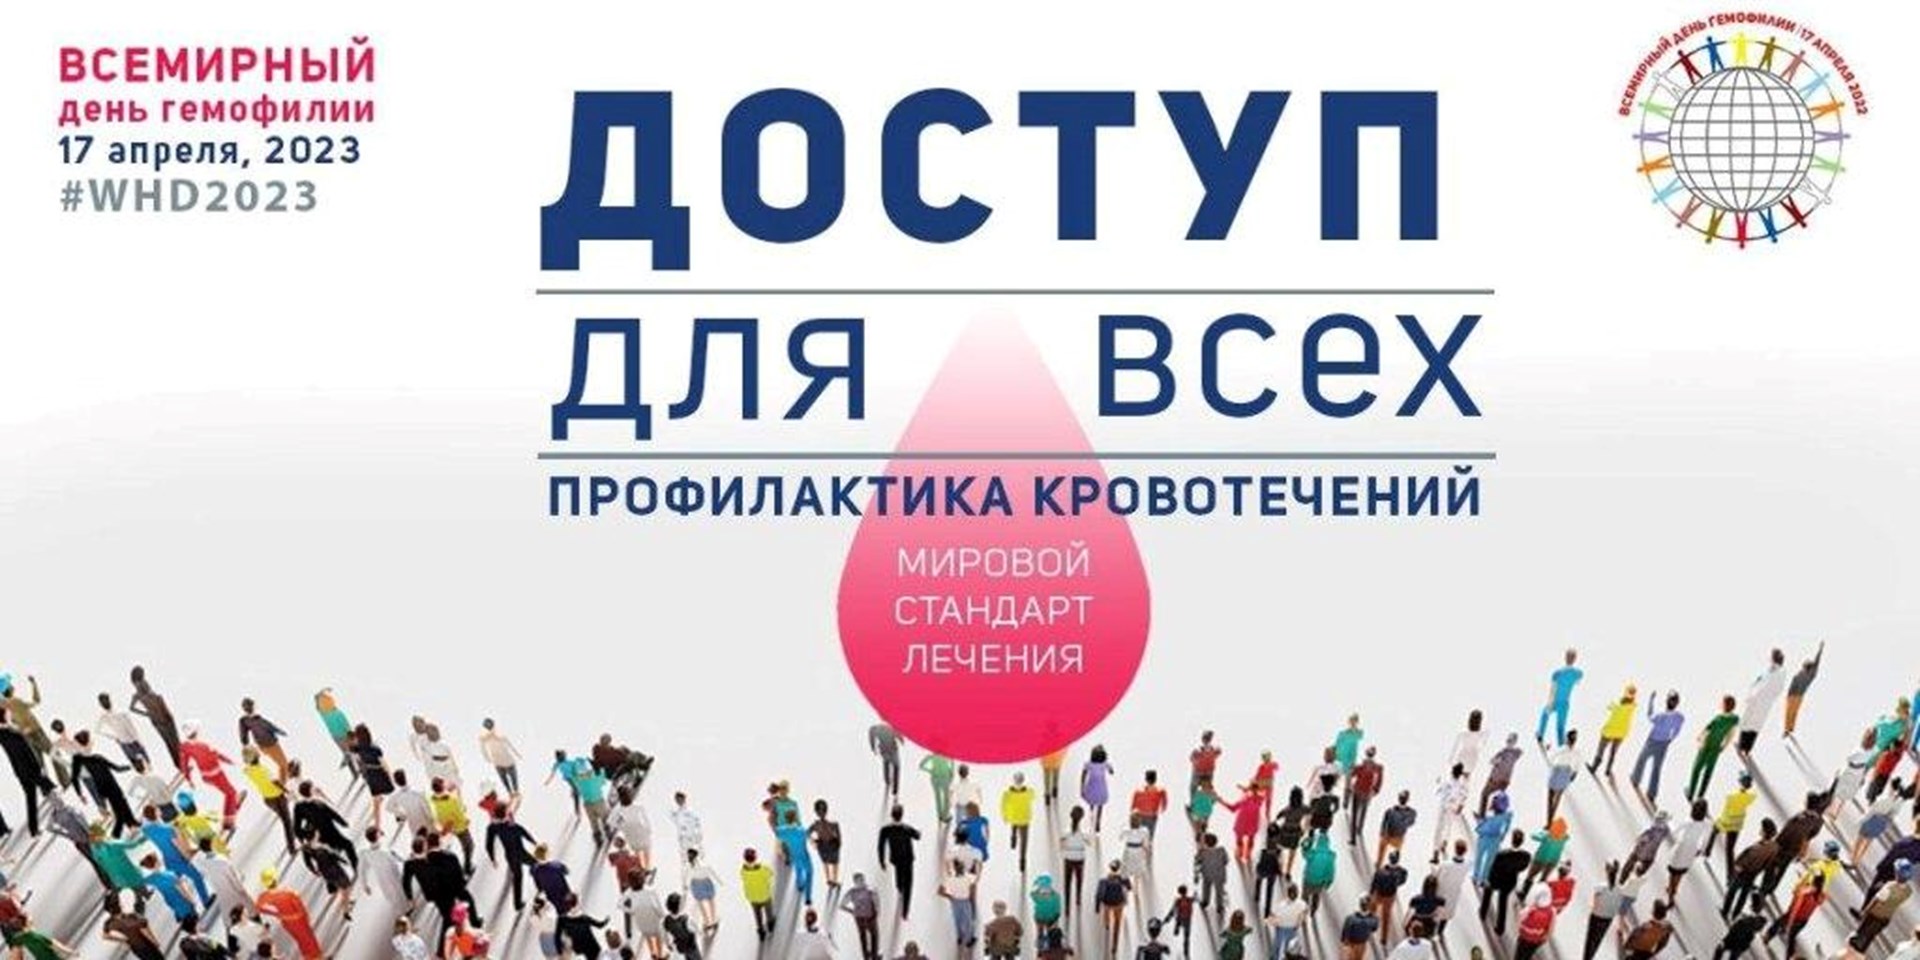 Пресс-Релиз Всероссийского общества гемофилии к Всемирному дню гемофилии 17 апреля 2023 года